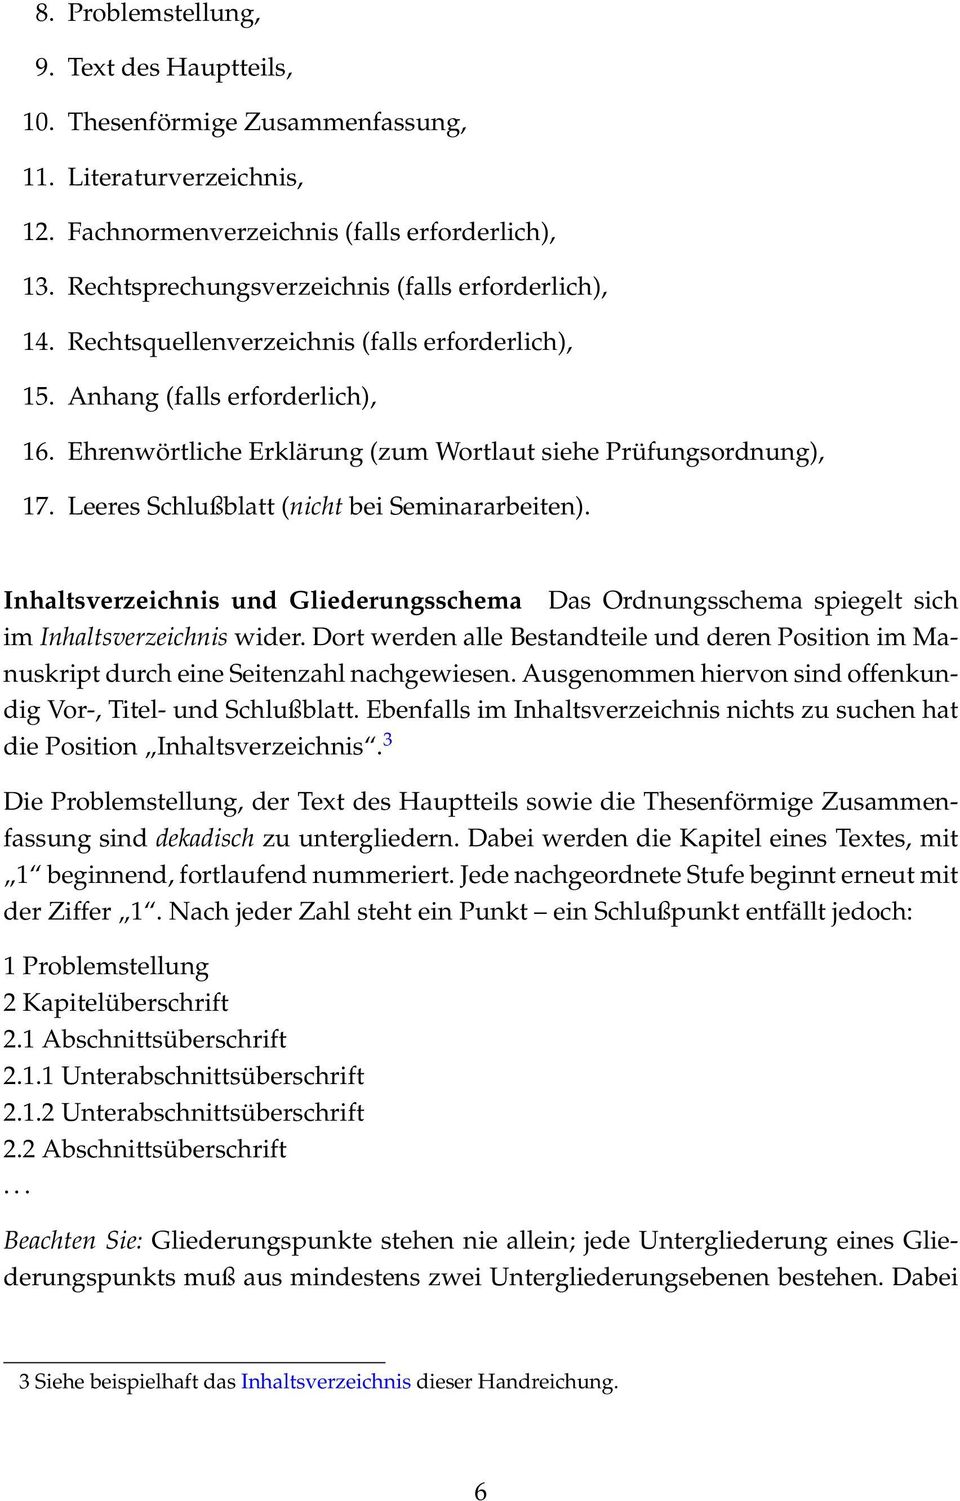 Ehrenwörtliche Erklärung (zum Wortlaut siehe Prüfungsordnung), 17. Leeres Schlußblatt (nicht bei Seminararbeiten).